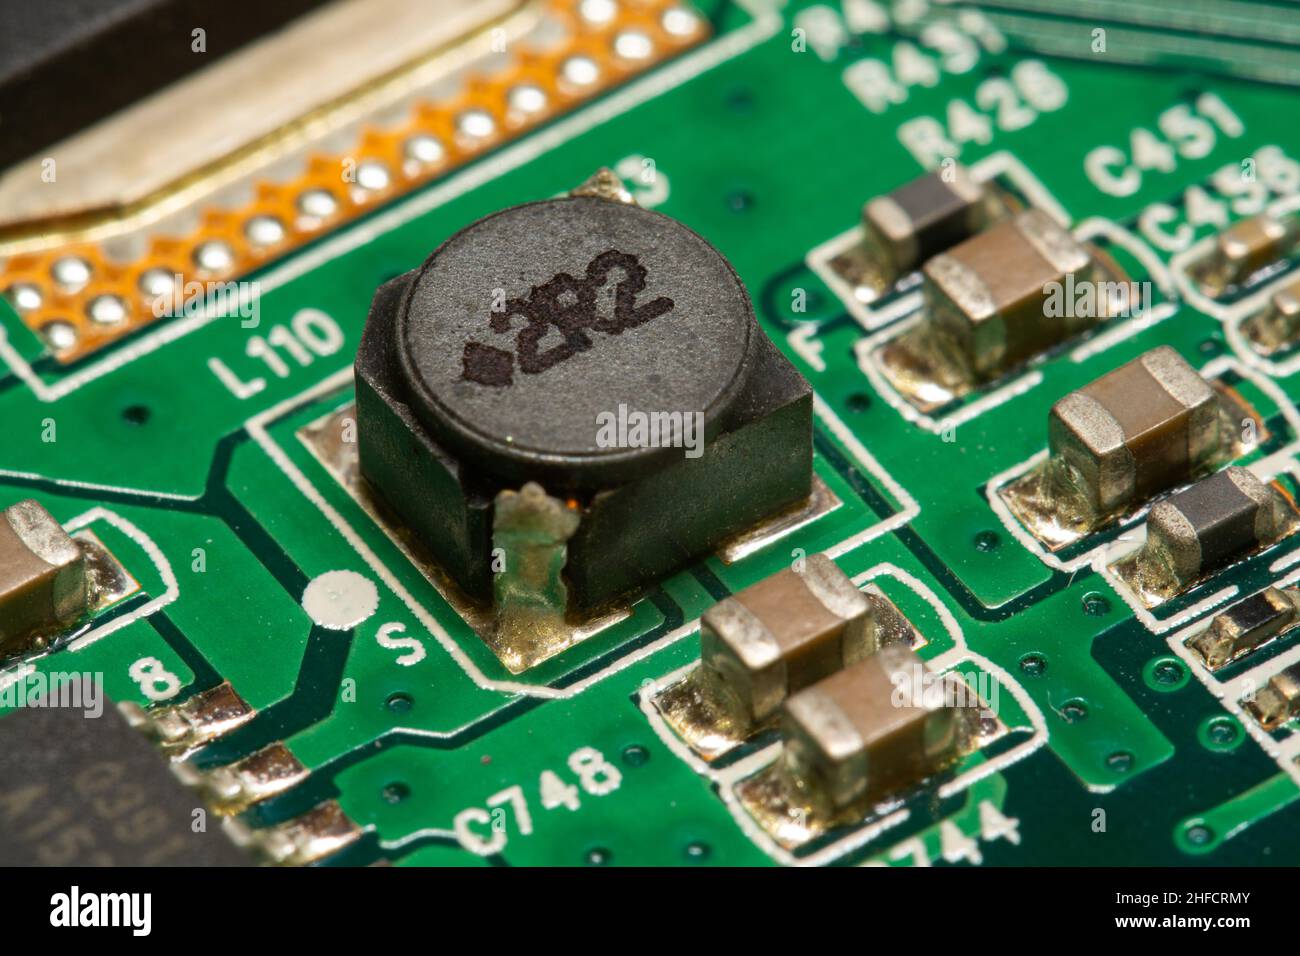 SMD-Induktivität und andere elektronische Bauteile, die auf einer grünen Leiterplatte (PCB) gelötet sind. Stockfoto